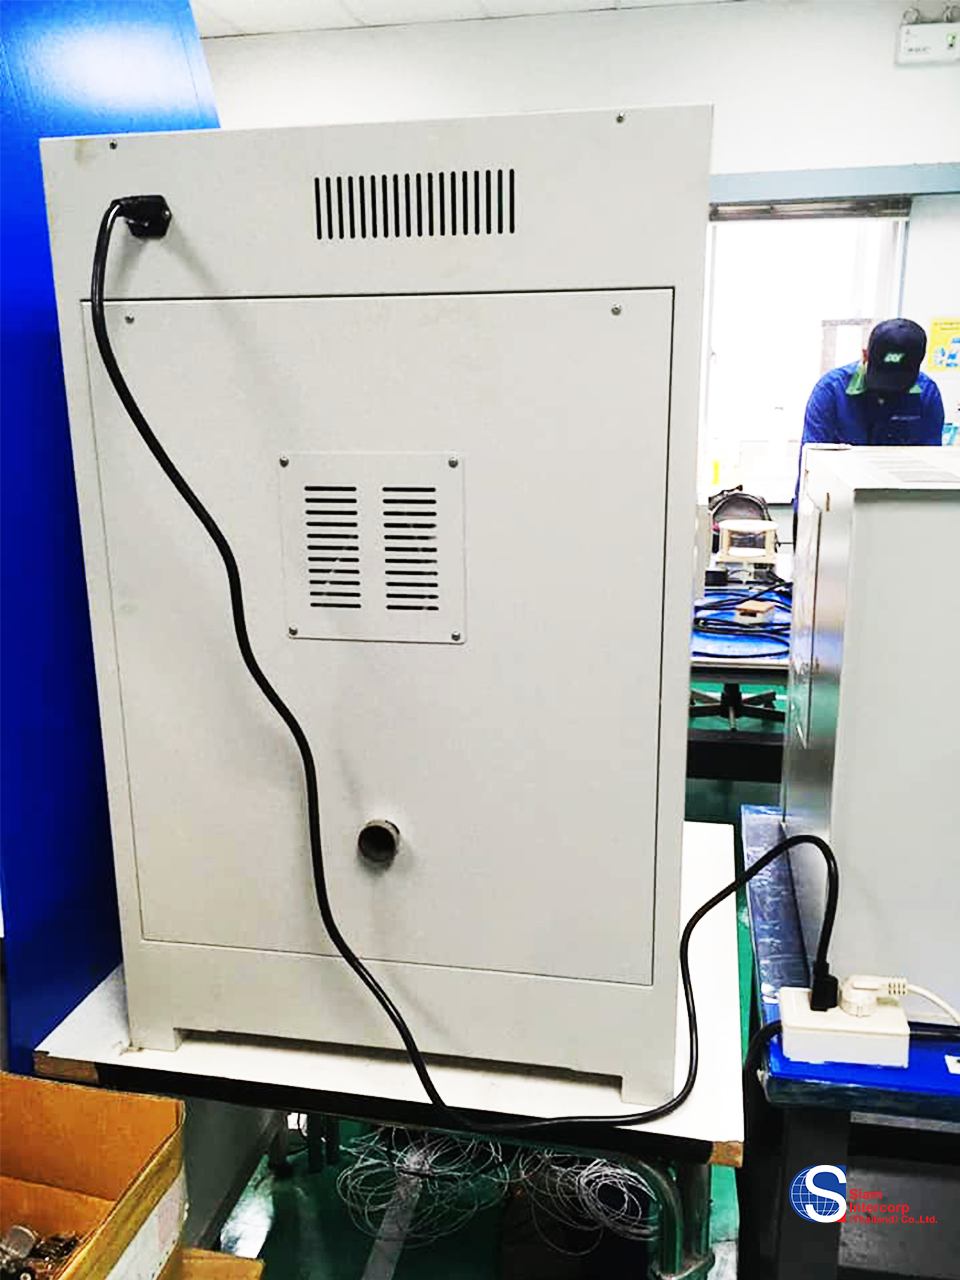 ติดตั้งตู้อบลมร้อน (Forced Air Oven) ยี่ห้อ Biobase พื้นที่จังหวัด ปทุมธานี